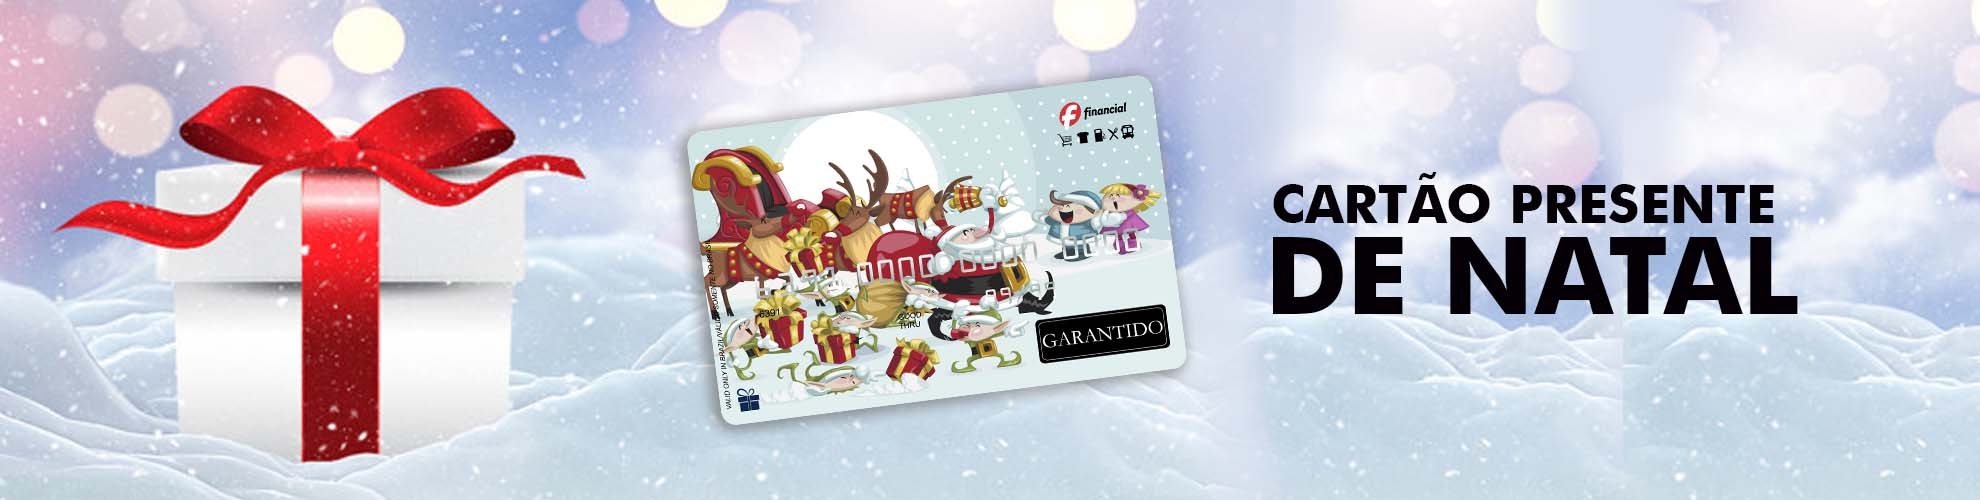 Cartão Presente de Natal Garantido - Pré-pago